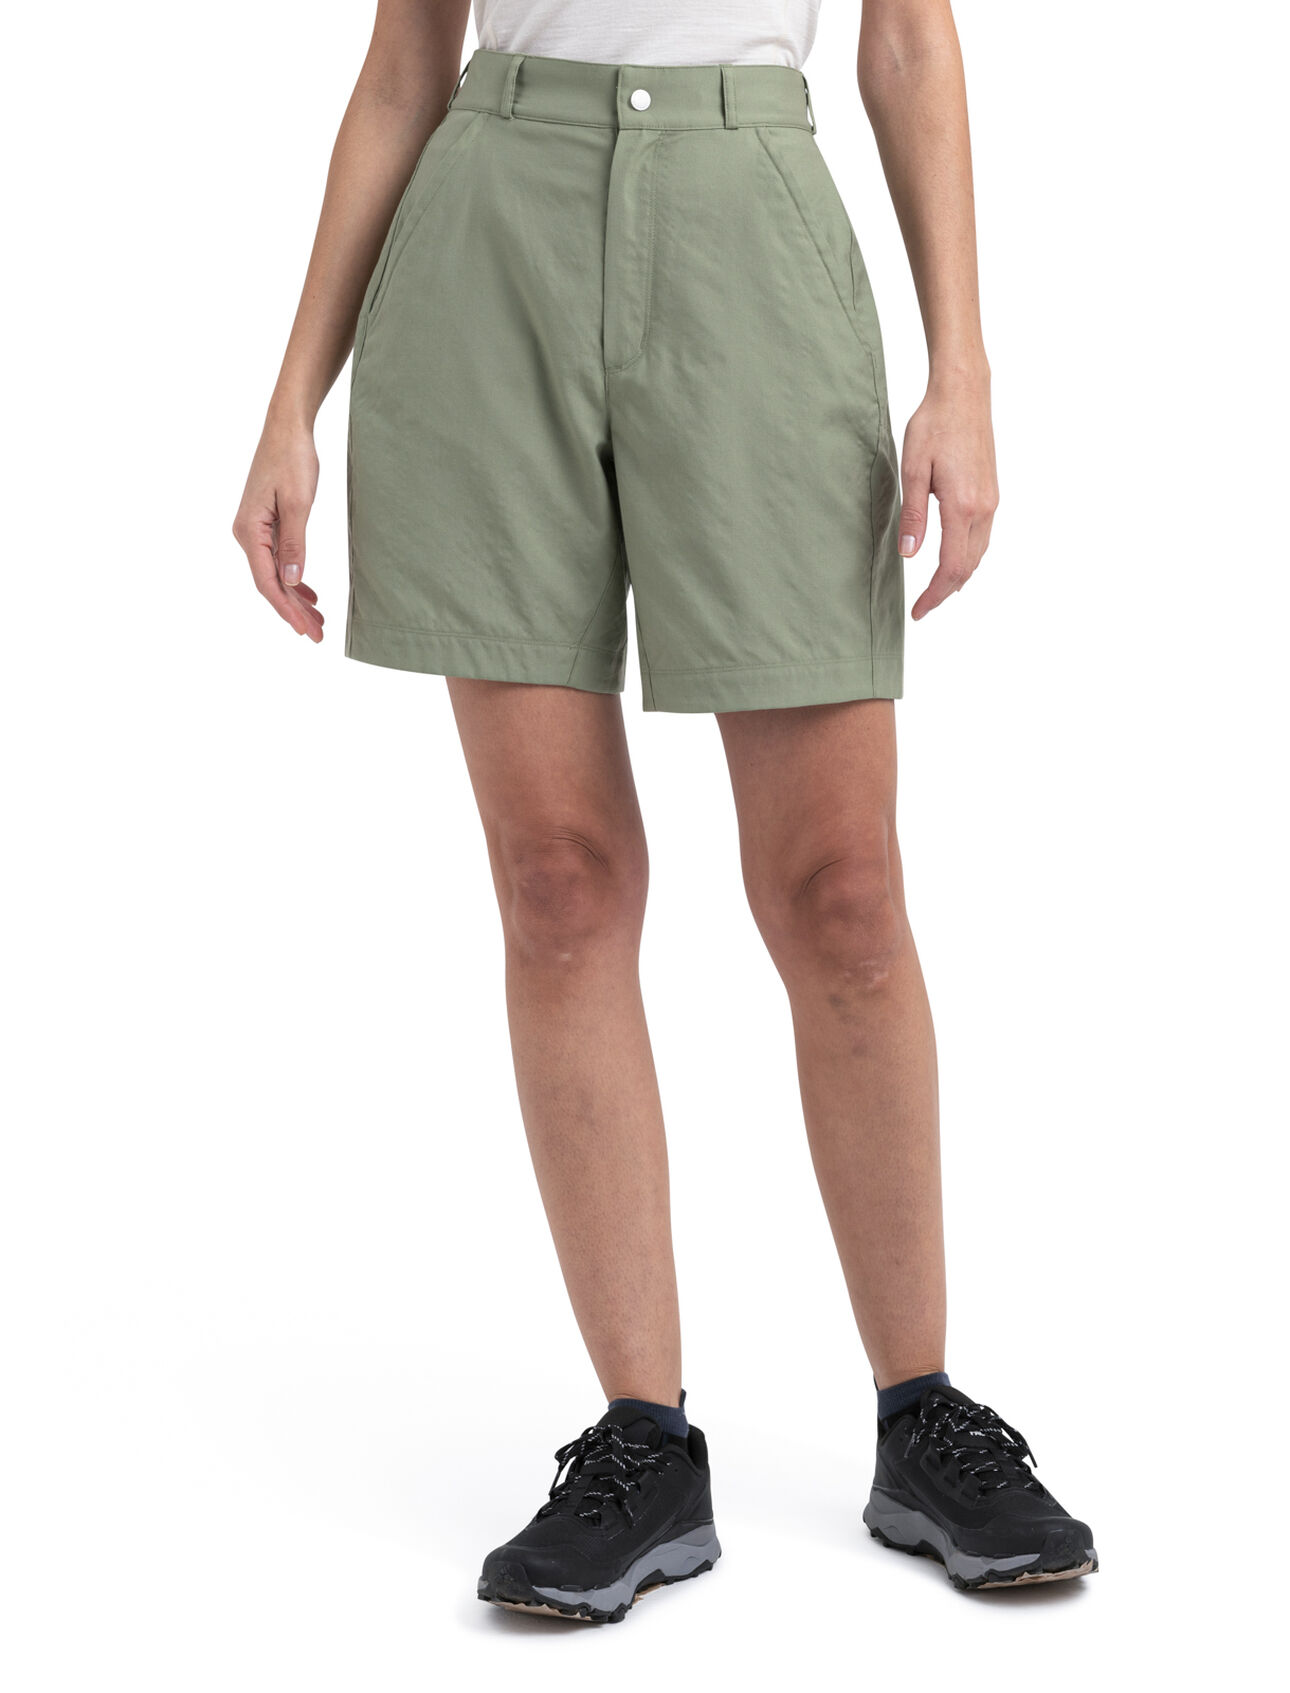 Dam Hike shorts i merino Hike shorts är ett par slitstarka och pålitliga fjällshorts som är tillverkad i en unik blandning av Merinoull och ekologisk bomull. Det gör att de passar utmärkt för alla slags fjälläventyr.